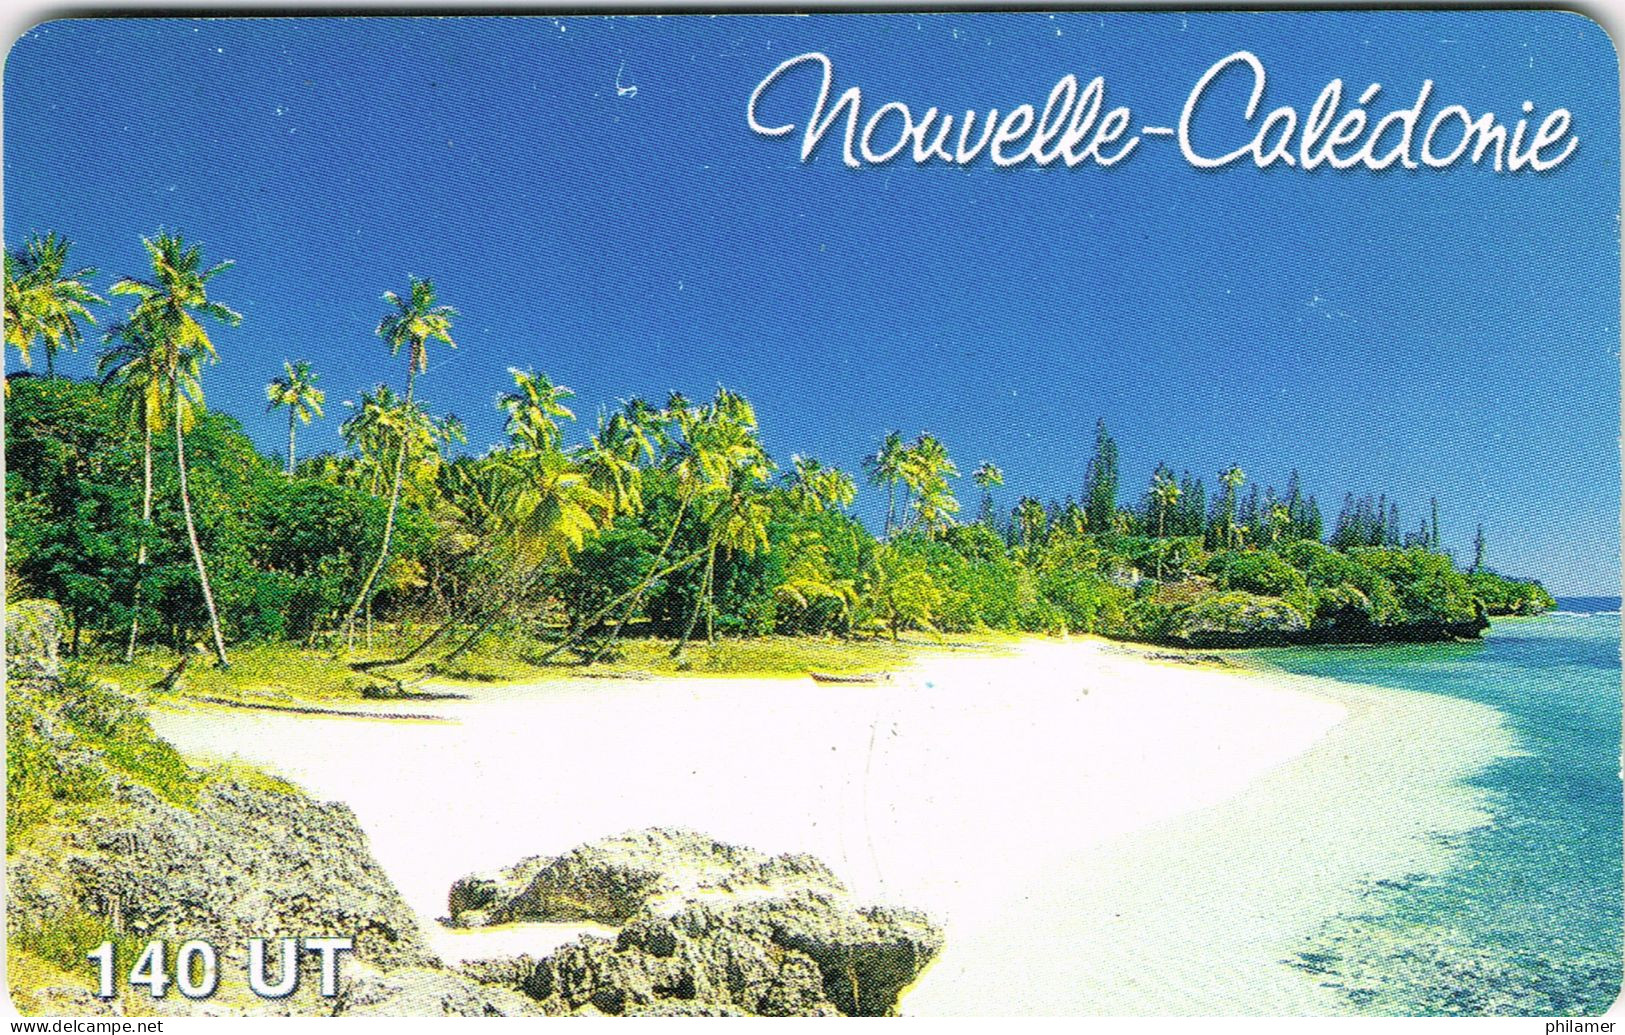 Nouvelle Caledonie New Caledonia Phonecard Telecarte NC72 Plage Medu Mare Loyaute Plage Beach 140 Un. UT BE - Nouvelle-Calédonie